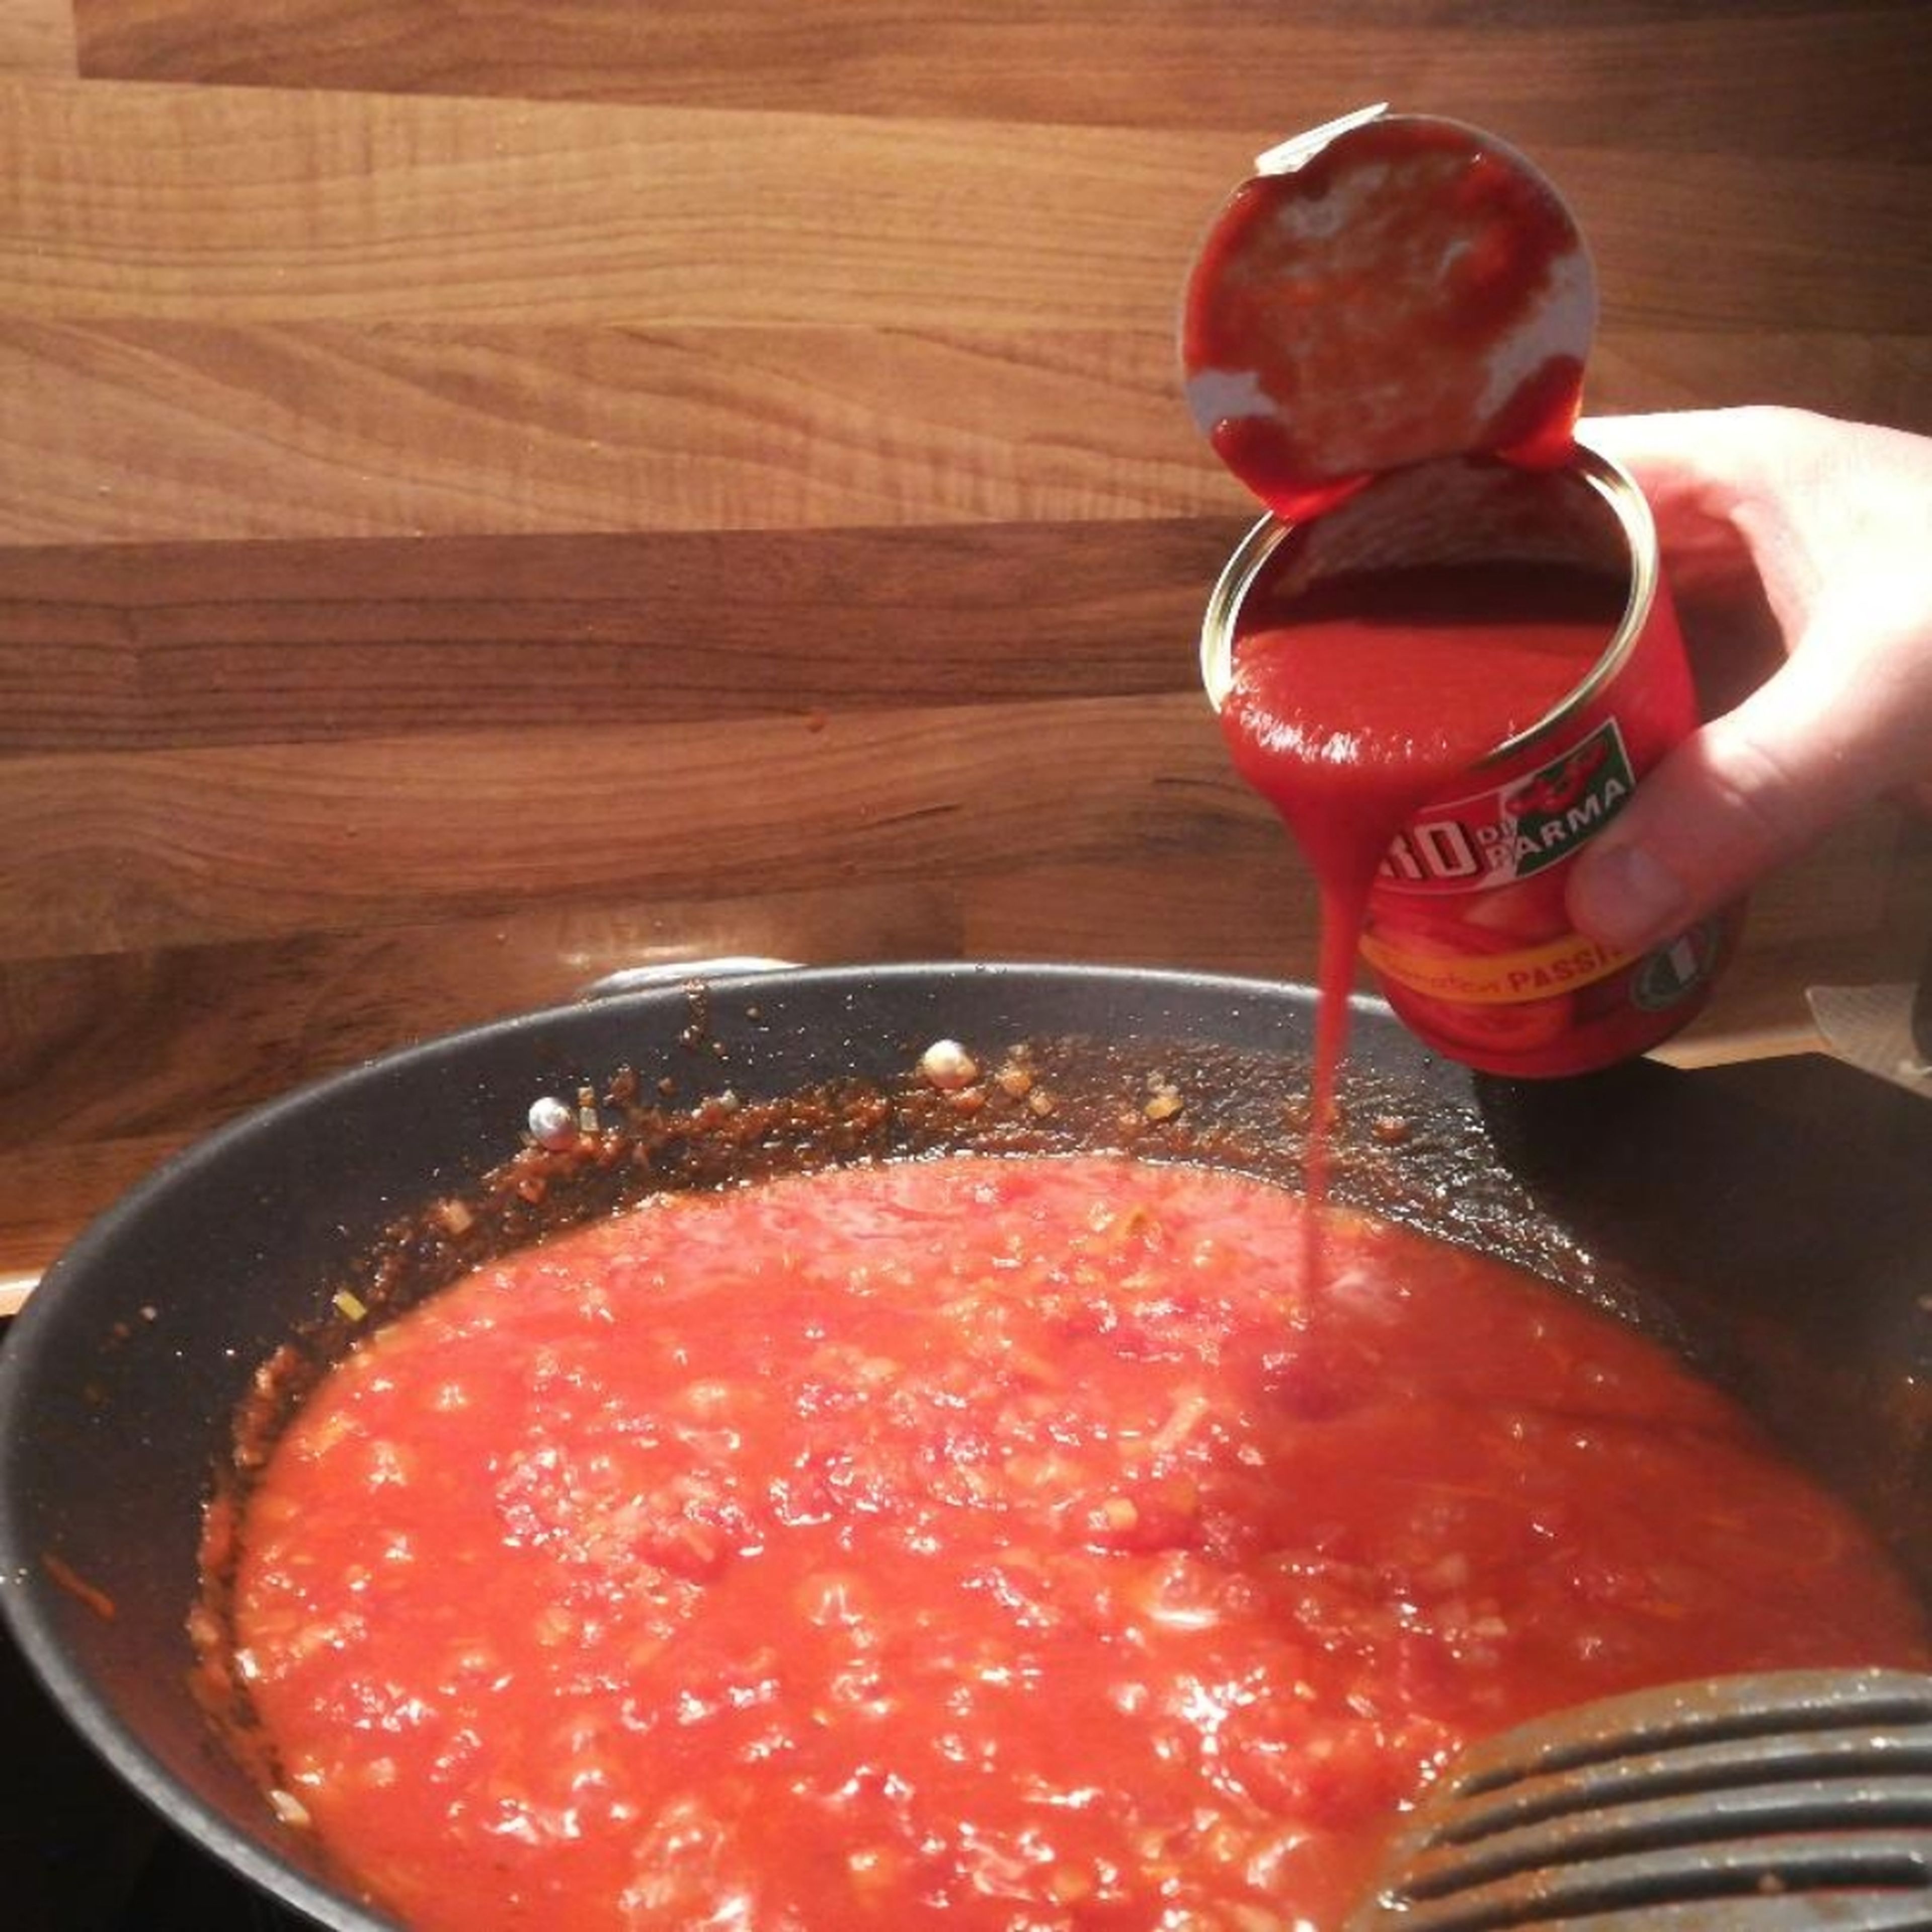 Gehackte Tomaten zu den Zwiebel geben, verrühren und 5 Minuten köcheln lassen. Danach die passierten Tomaten hinzugeben. Mit Basilikum, Oregano abschmecken.